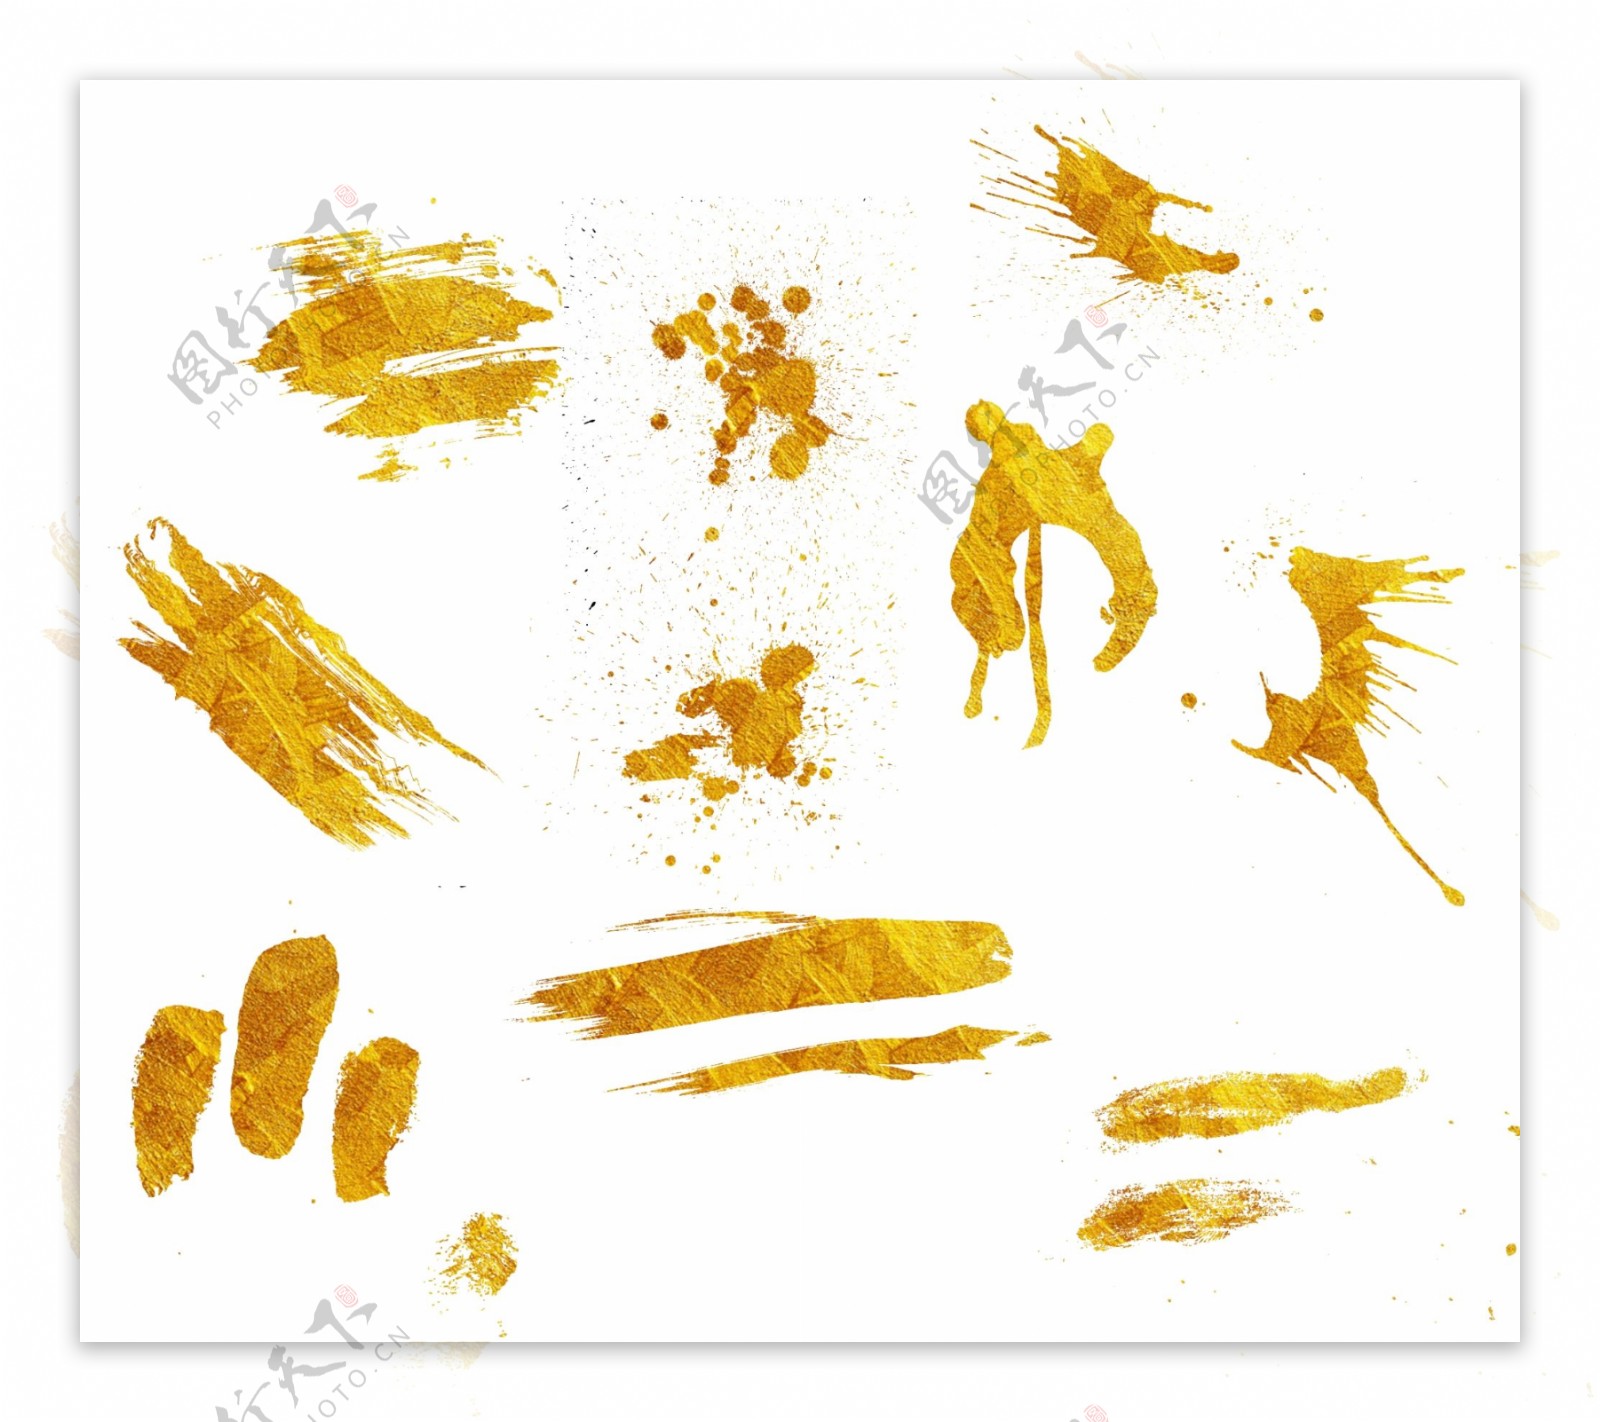 金色笔画素材金色喷墨元素金色水墨装饰集合